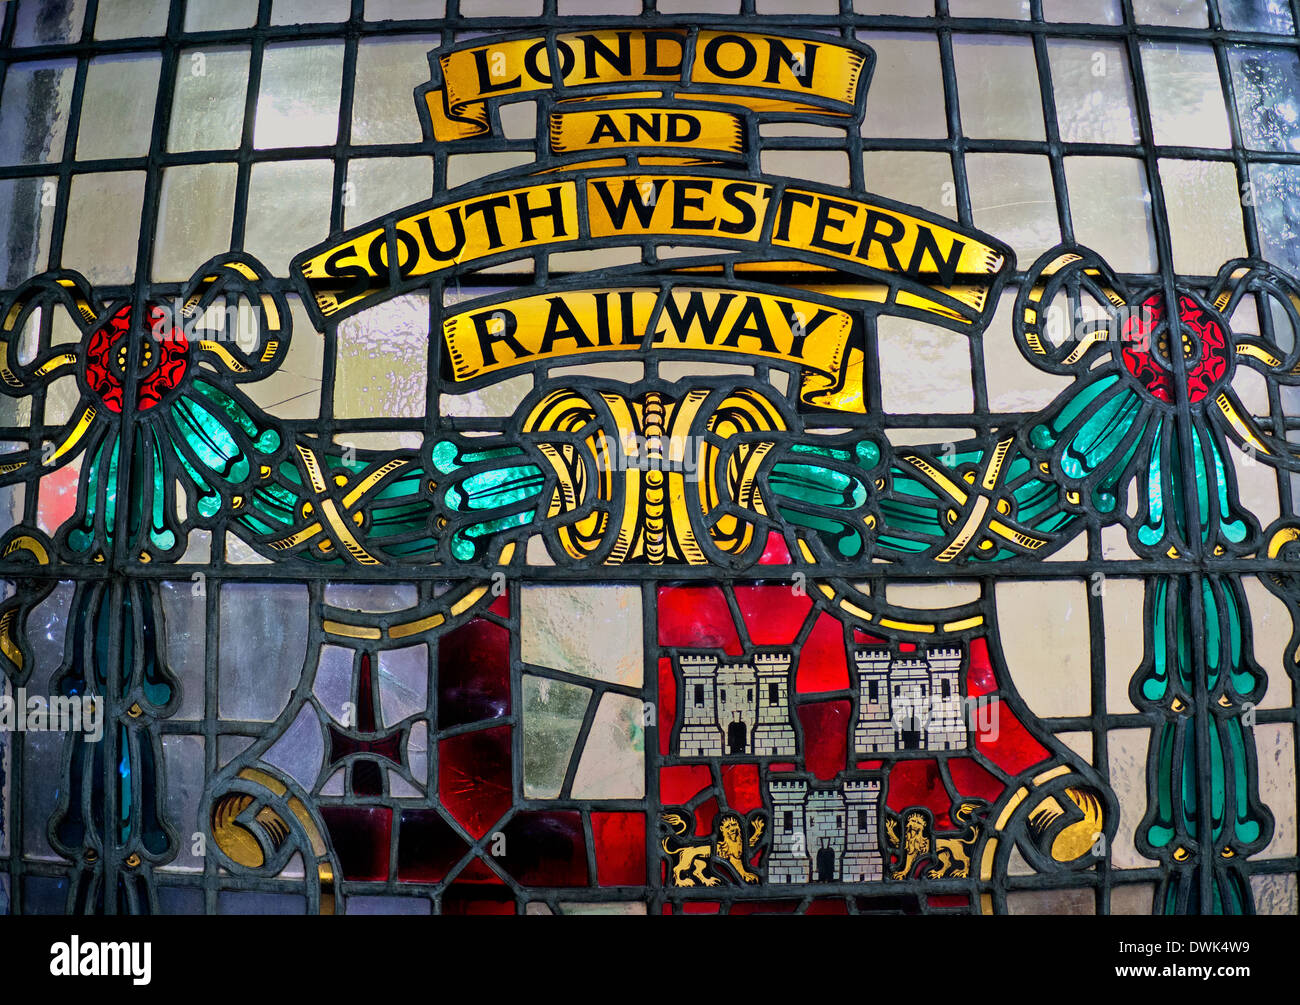 Centro storico di vetrate presso la stazione di Waterloo raffiguranti ex indipendente di Londra e South Western Railway Foto Stock